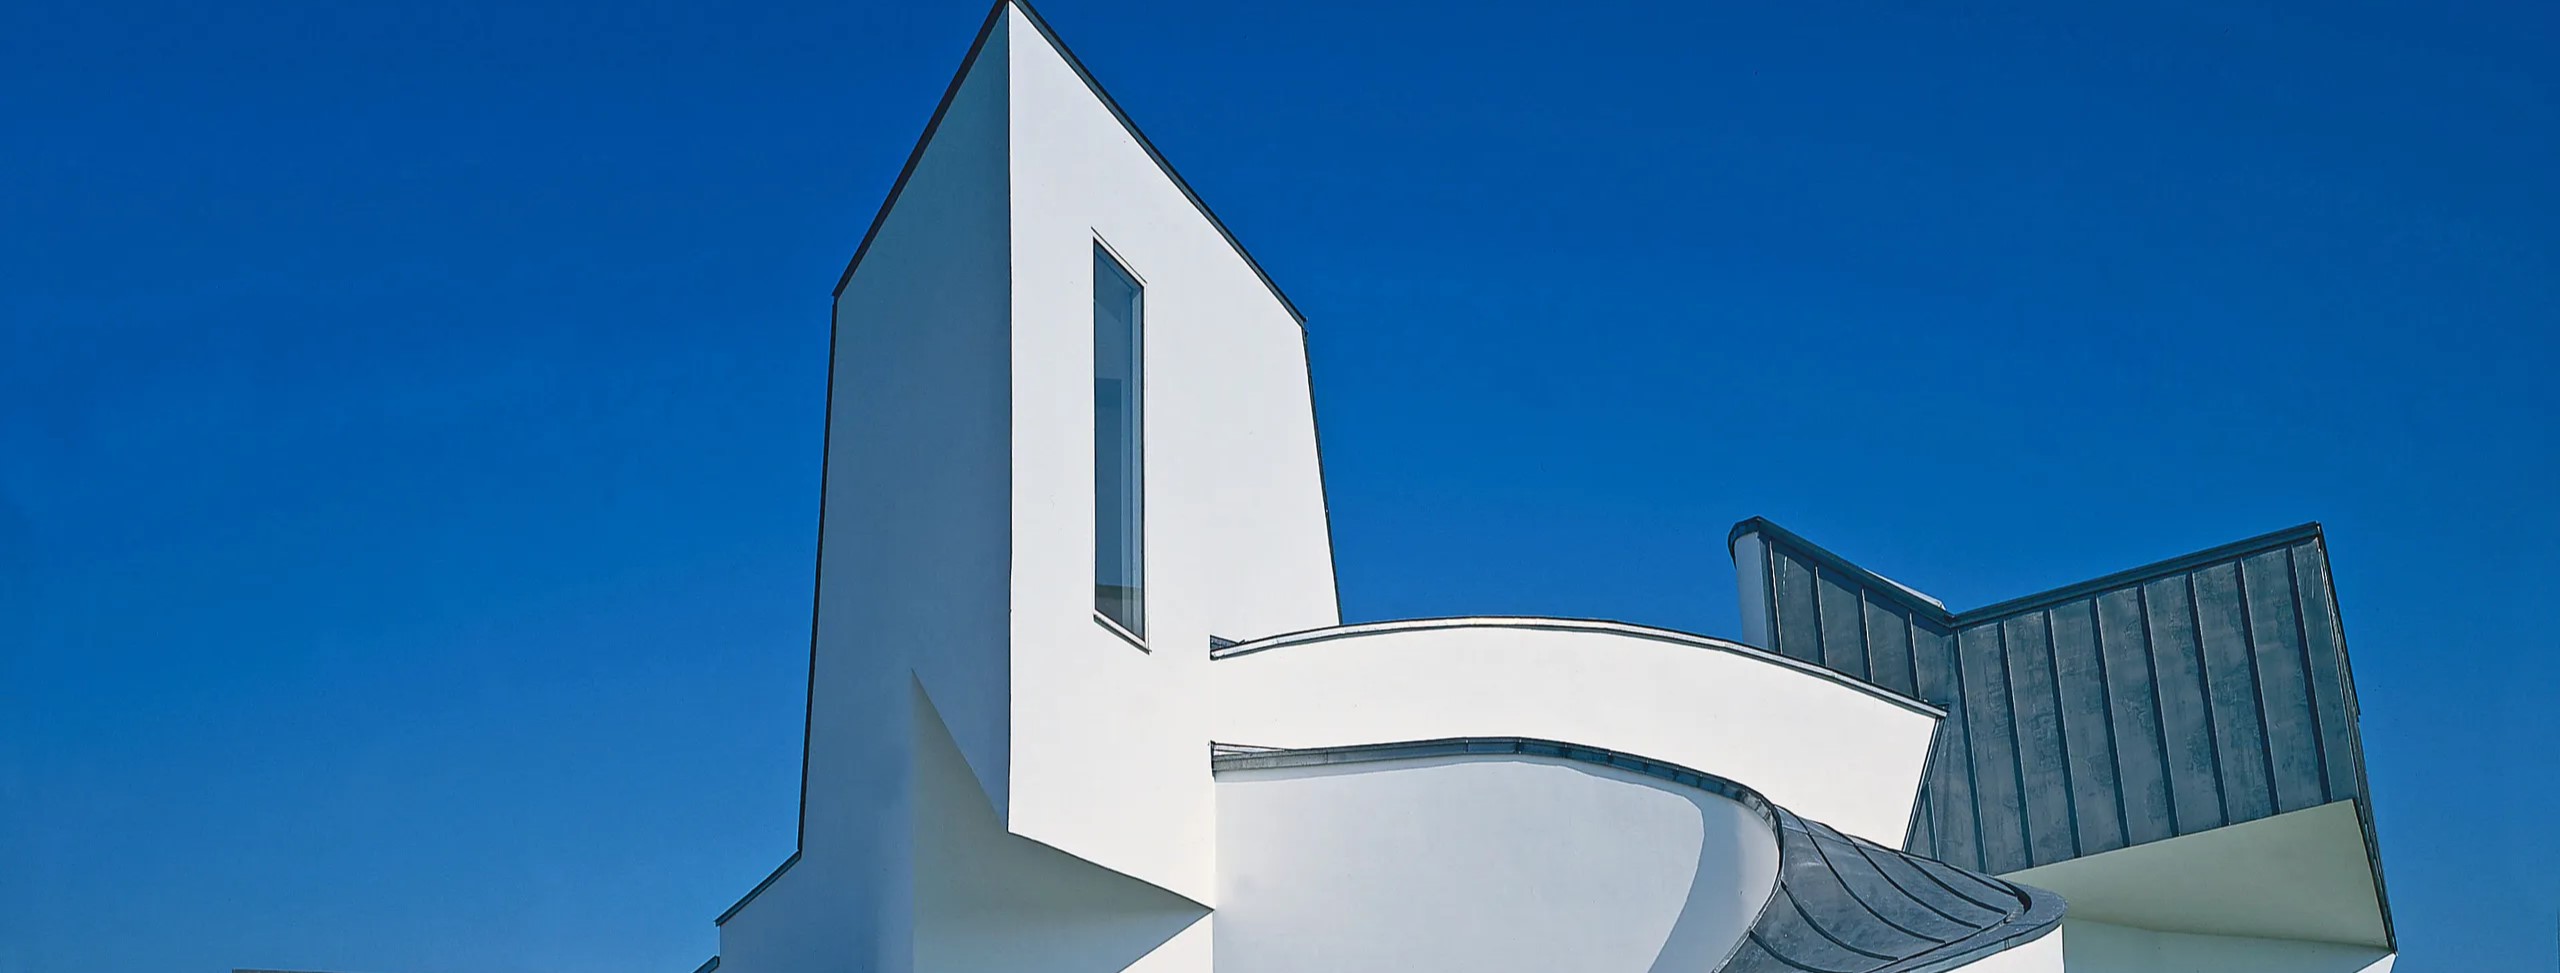 Vì sao phong cách Bauhaus lại có ảnh hưởng đến nền nghệ thuật hiện đại? 